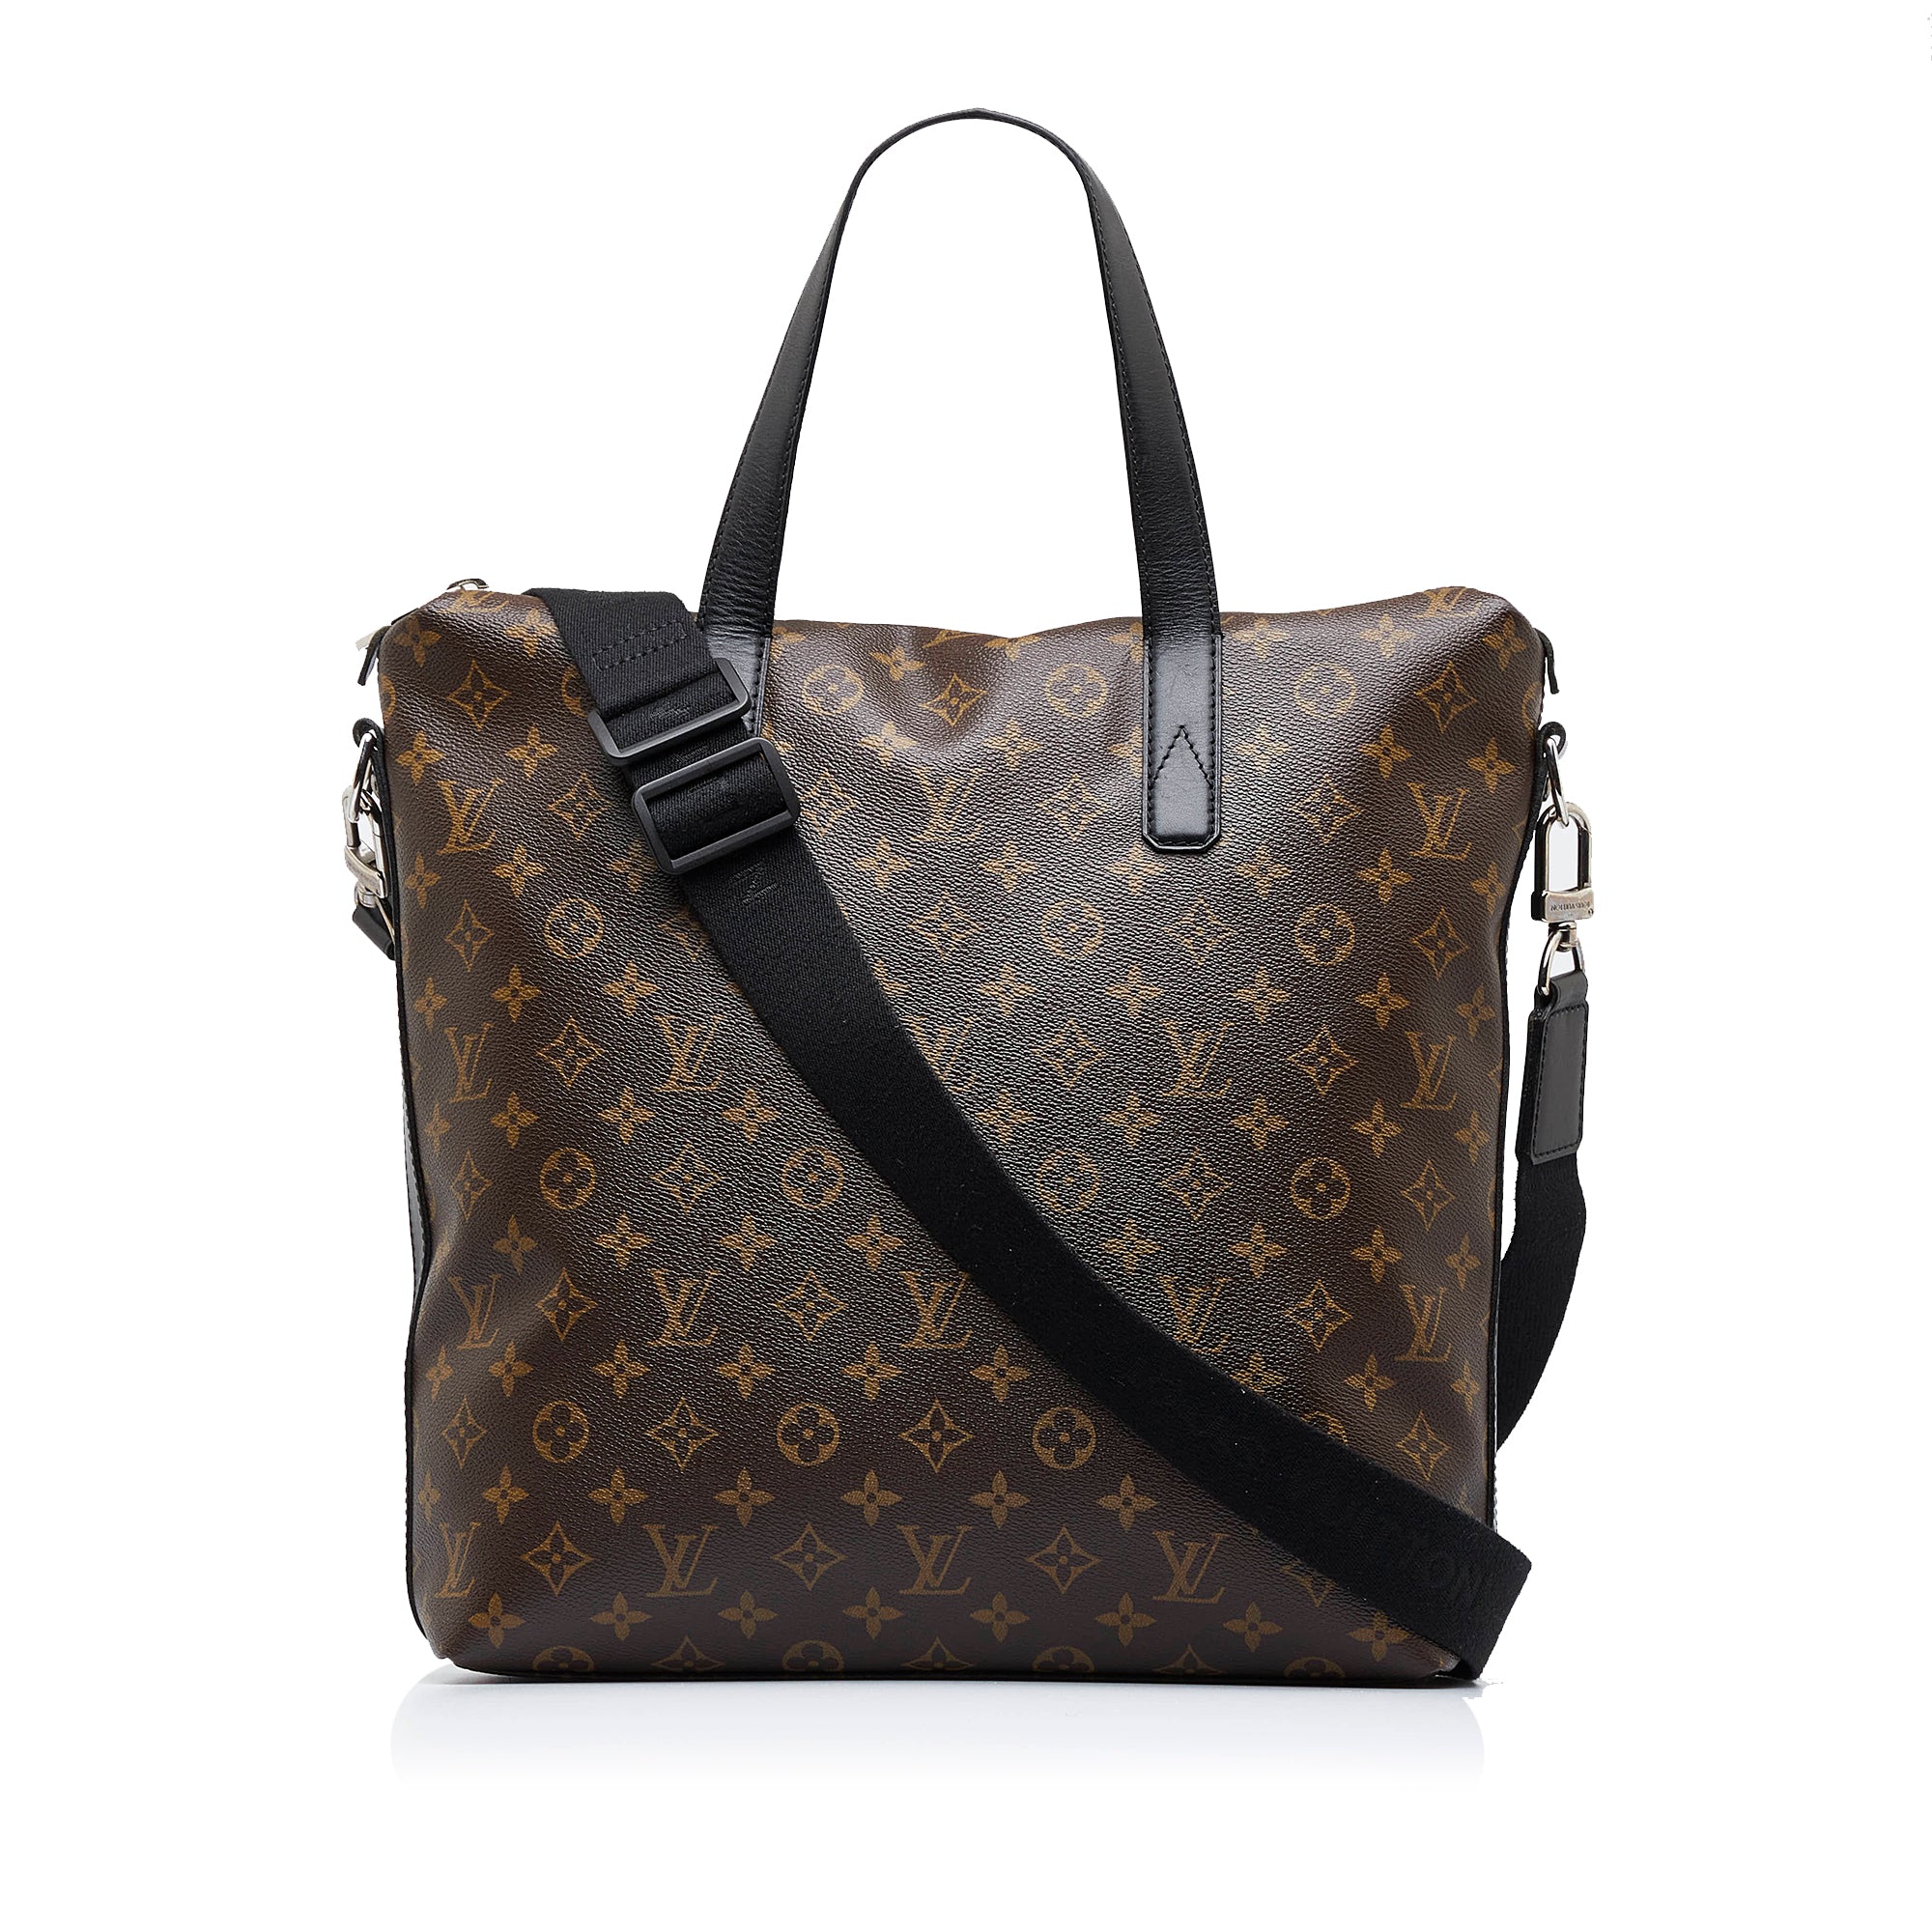 Louis Vuitton Detachable Strap Satchel/Top Handle Bag Handbags